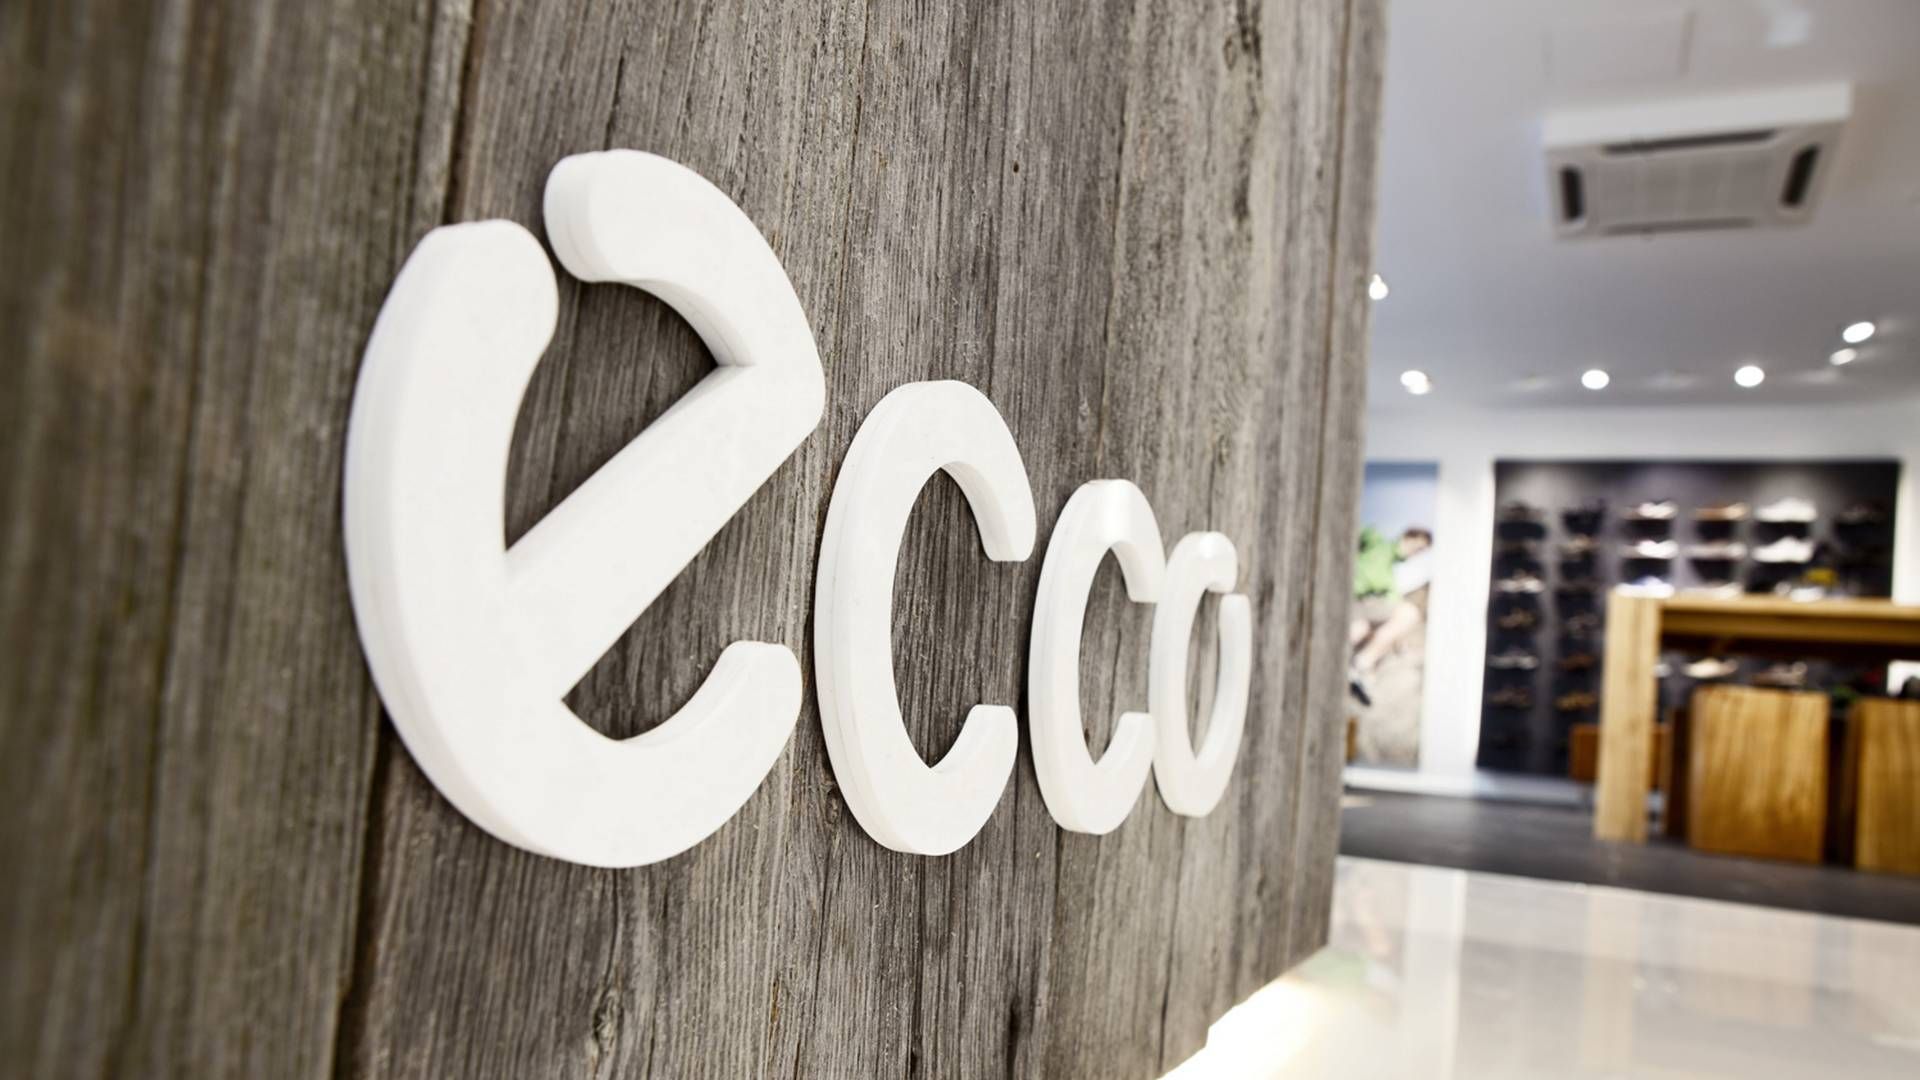 Ecco oplever i øjeblikket hård kritik fra blandt andet forhandlere, der mener, at skokoncernen lukker øjnene for Ruslands blodige krig i Ukraine. | Foto: Ecco/Pr